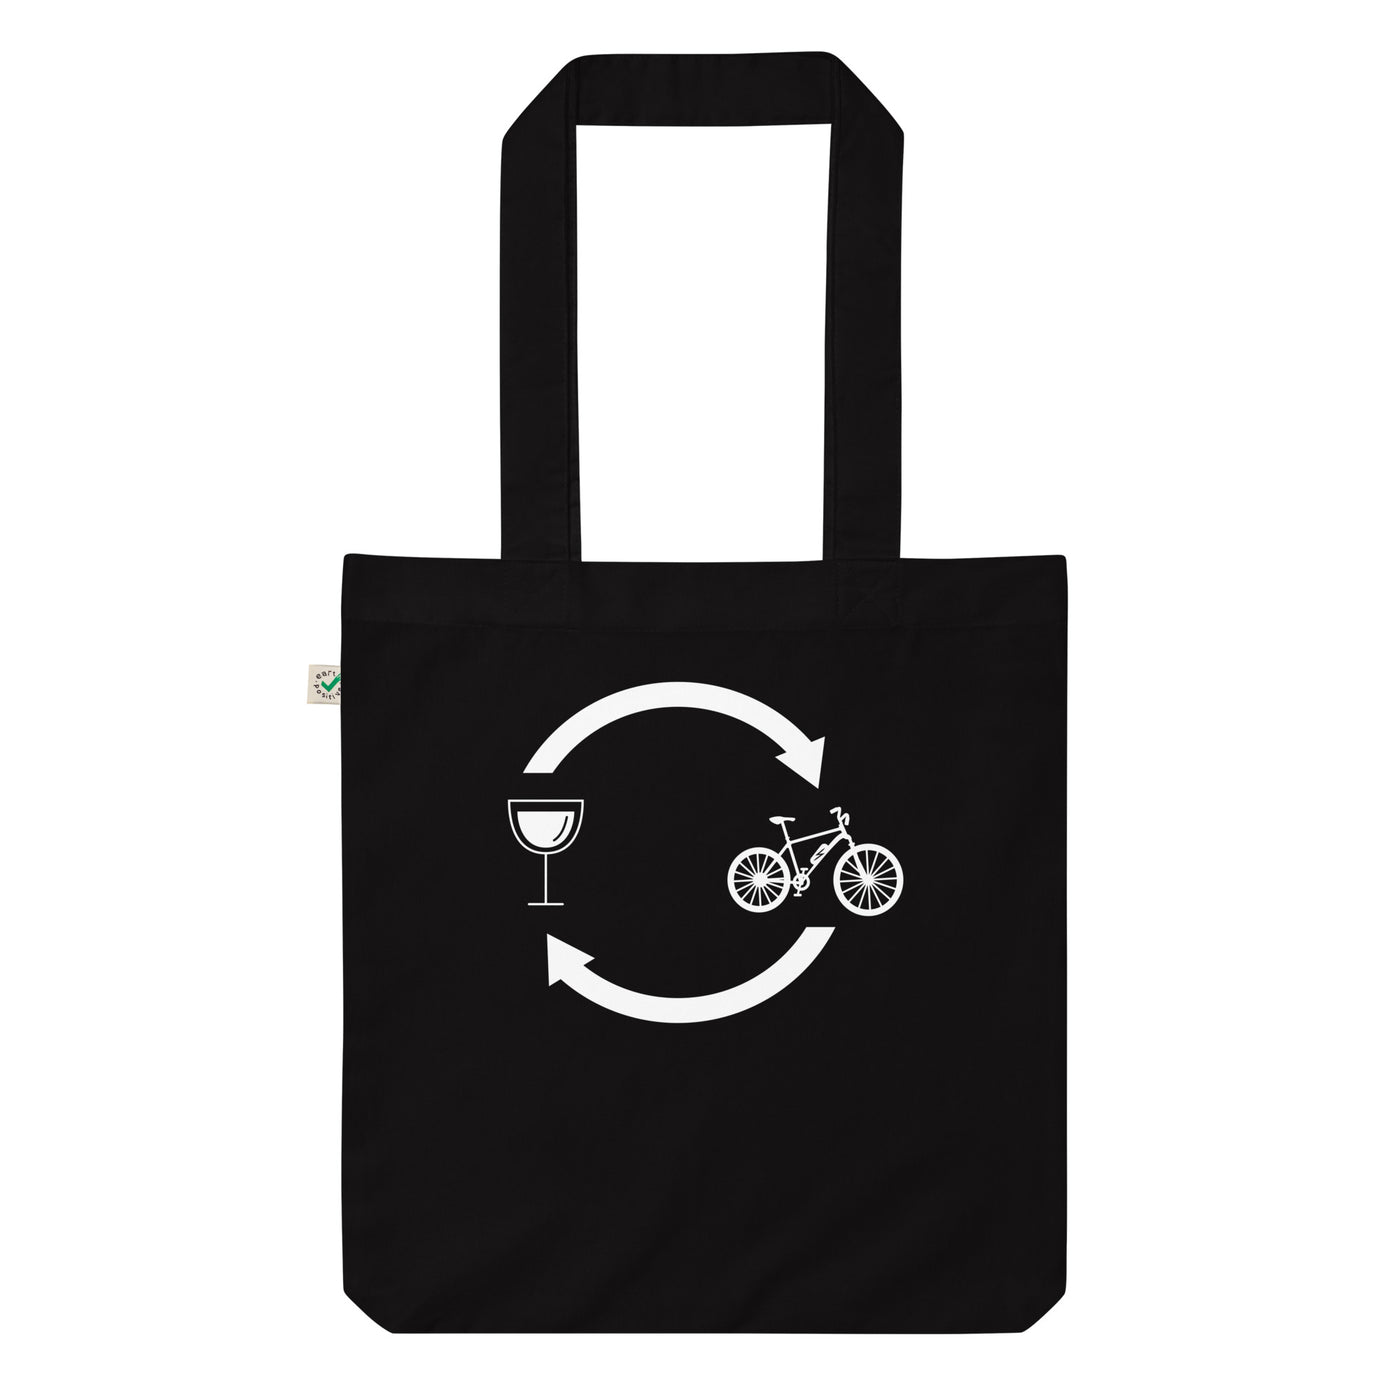 Wein, Ladepfeile Und E-Bike - Organic Einkaufstasche e-bike Black